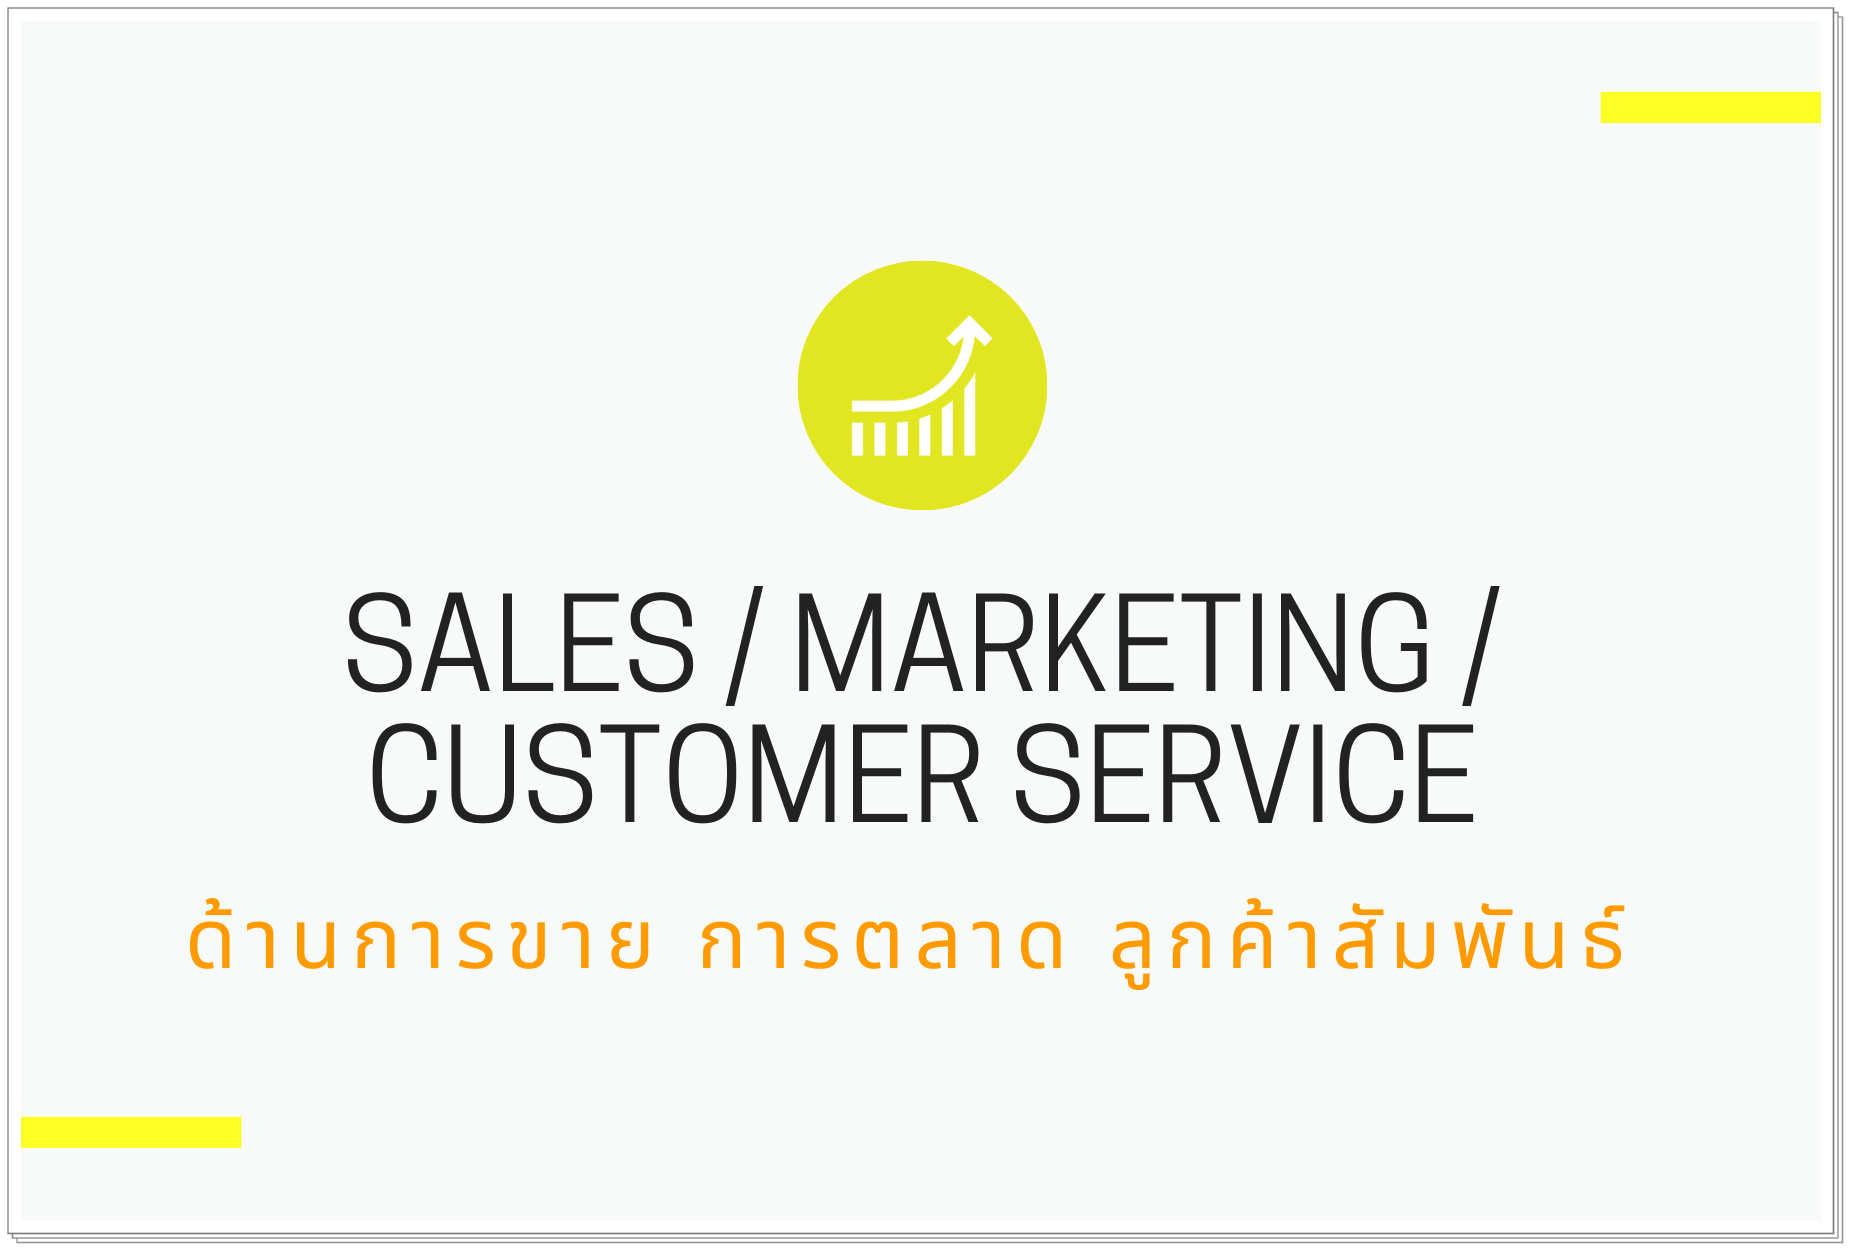 ด้านการขาย / การตลาด / ลูกค้าสัมพันธ์ (Sales / Marketing / Customer Service)